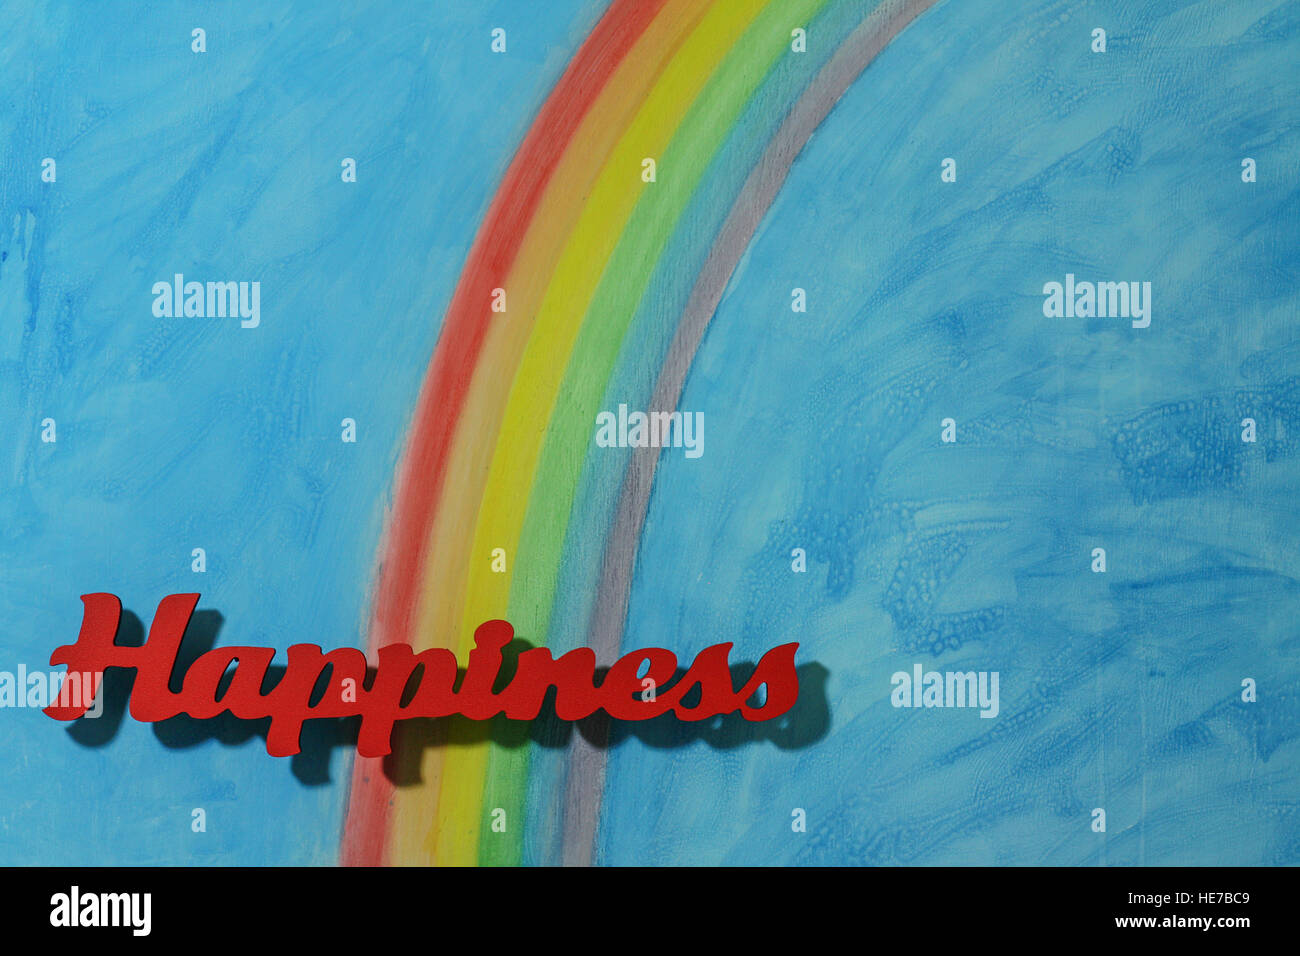 Letras rojas la ortografía de la palabra felicidad para ilustrar el concepto de alegría, feliz, el amor y el bienestar; el formato horizontal. Foto de stock